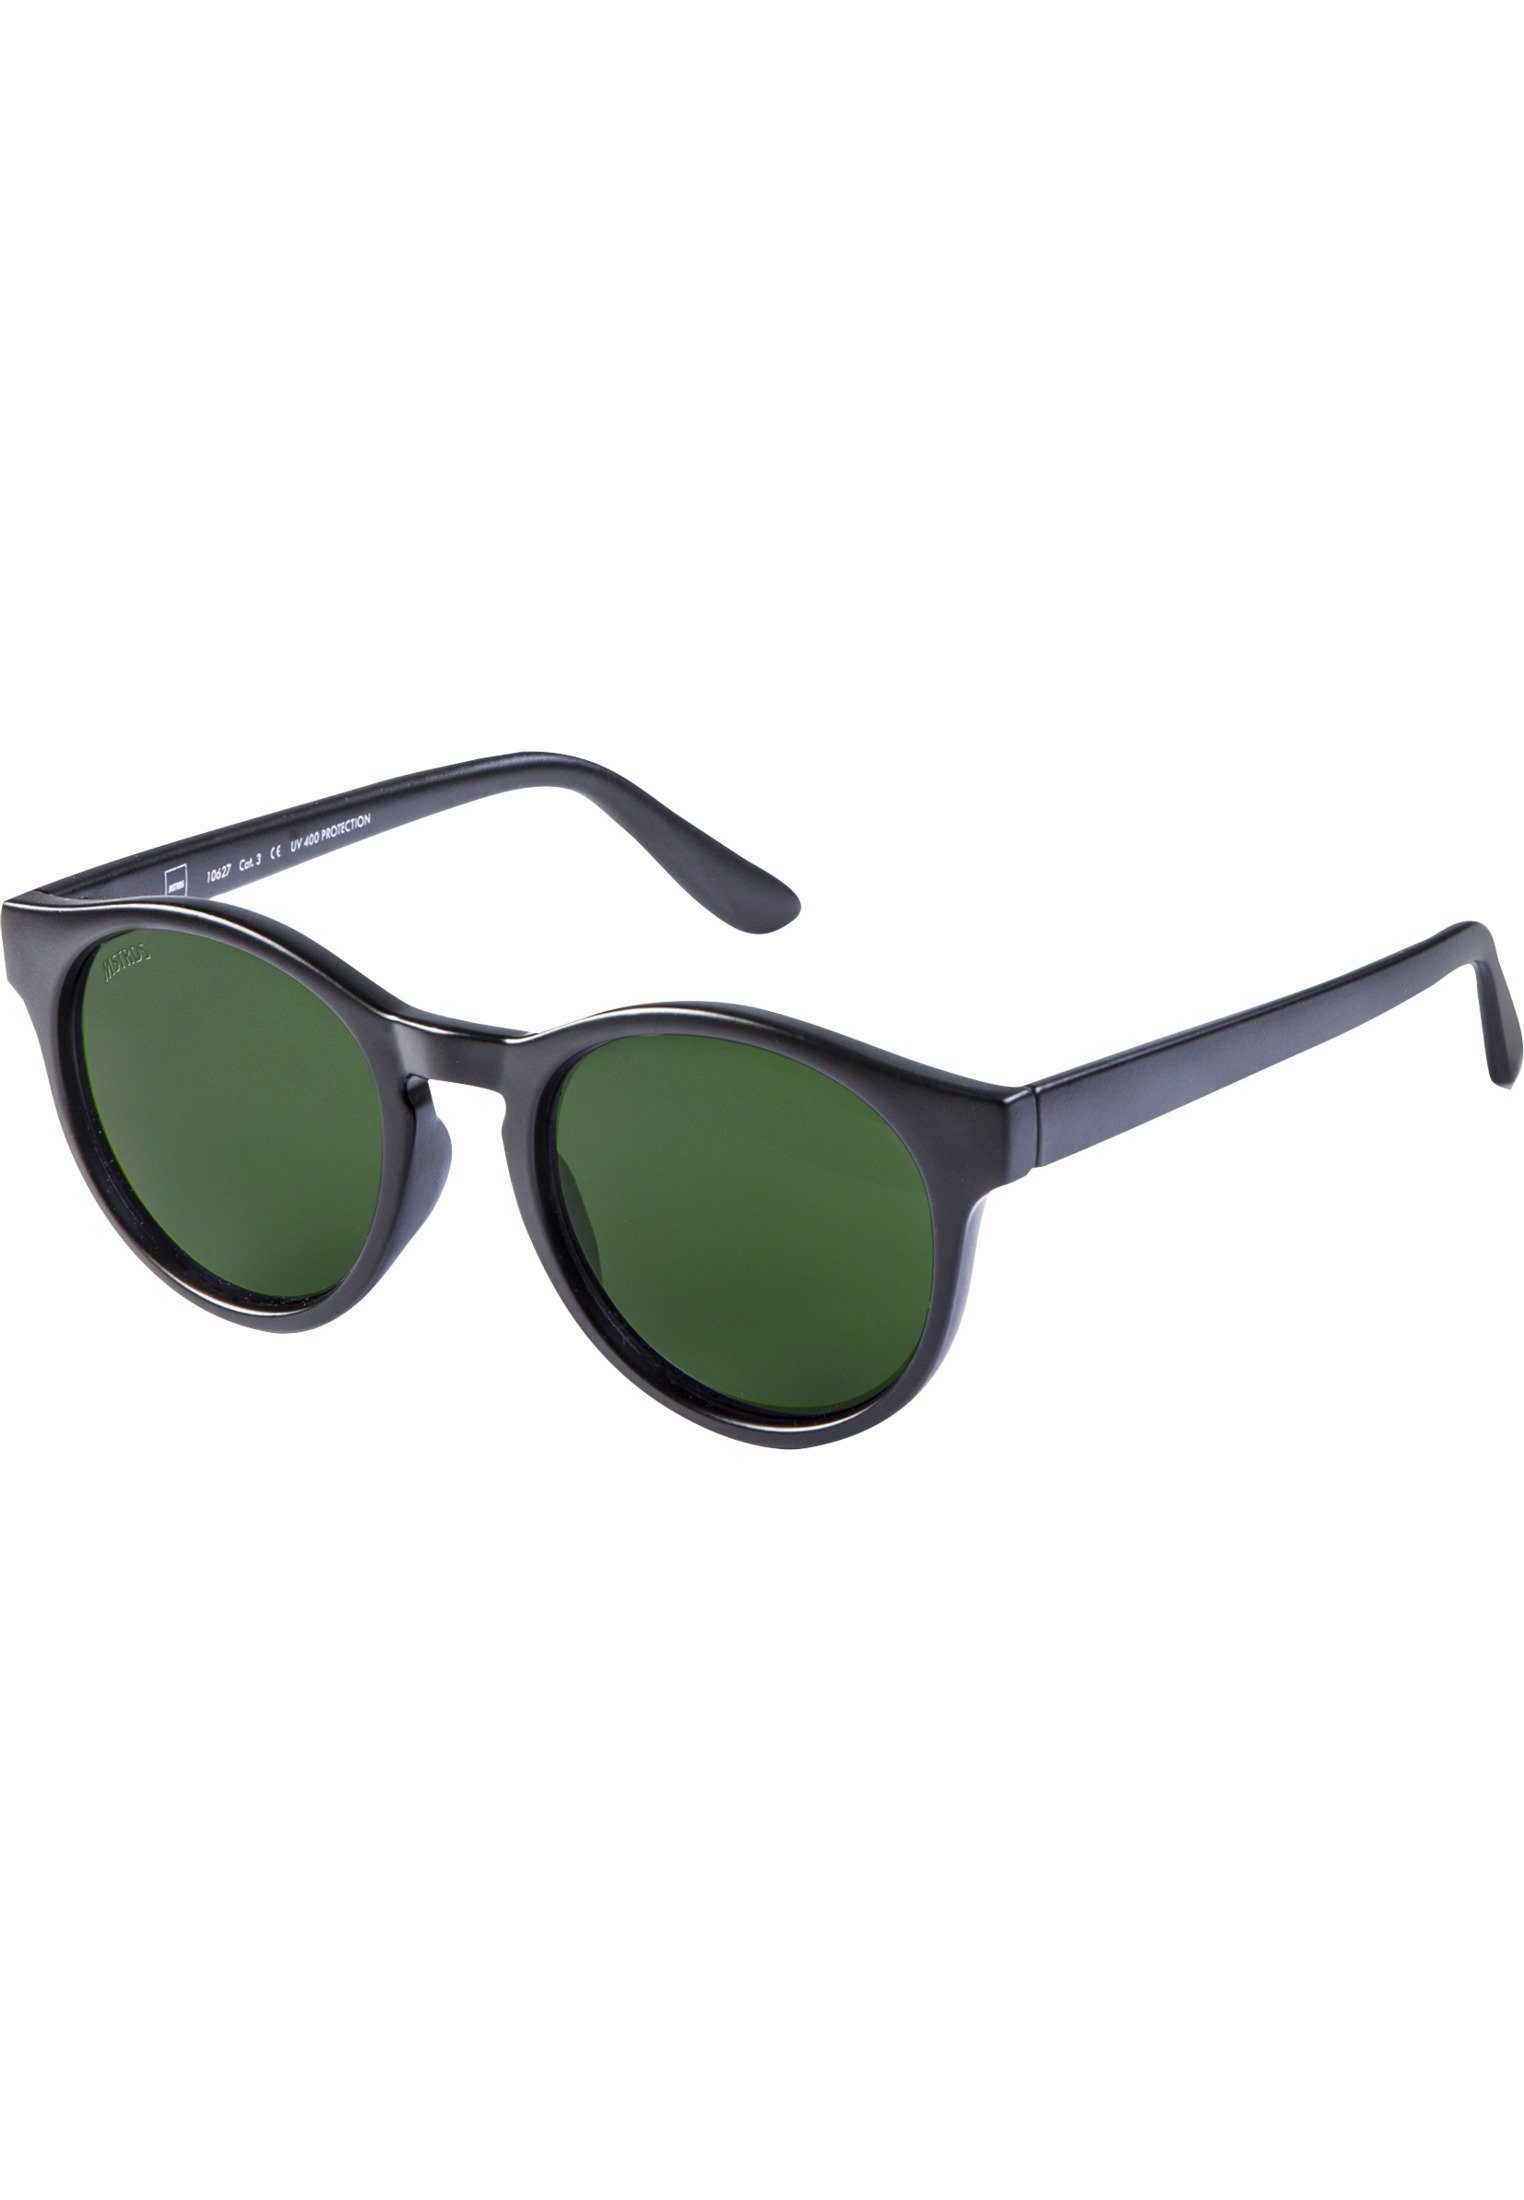 MSTRDS Sonnenbrille Accessoires Sunglasses blk/grn Sunrise